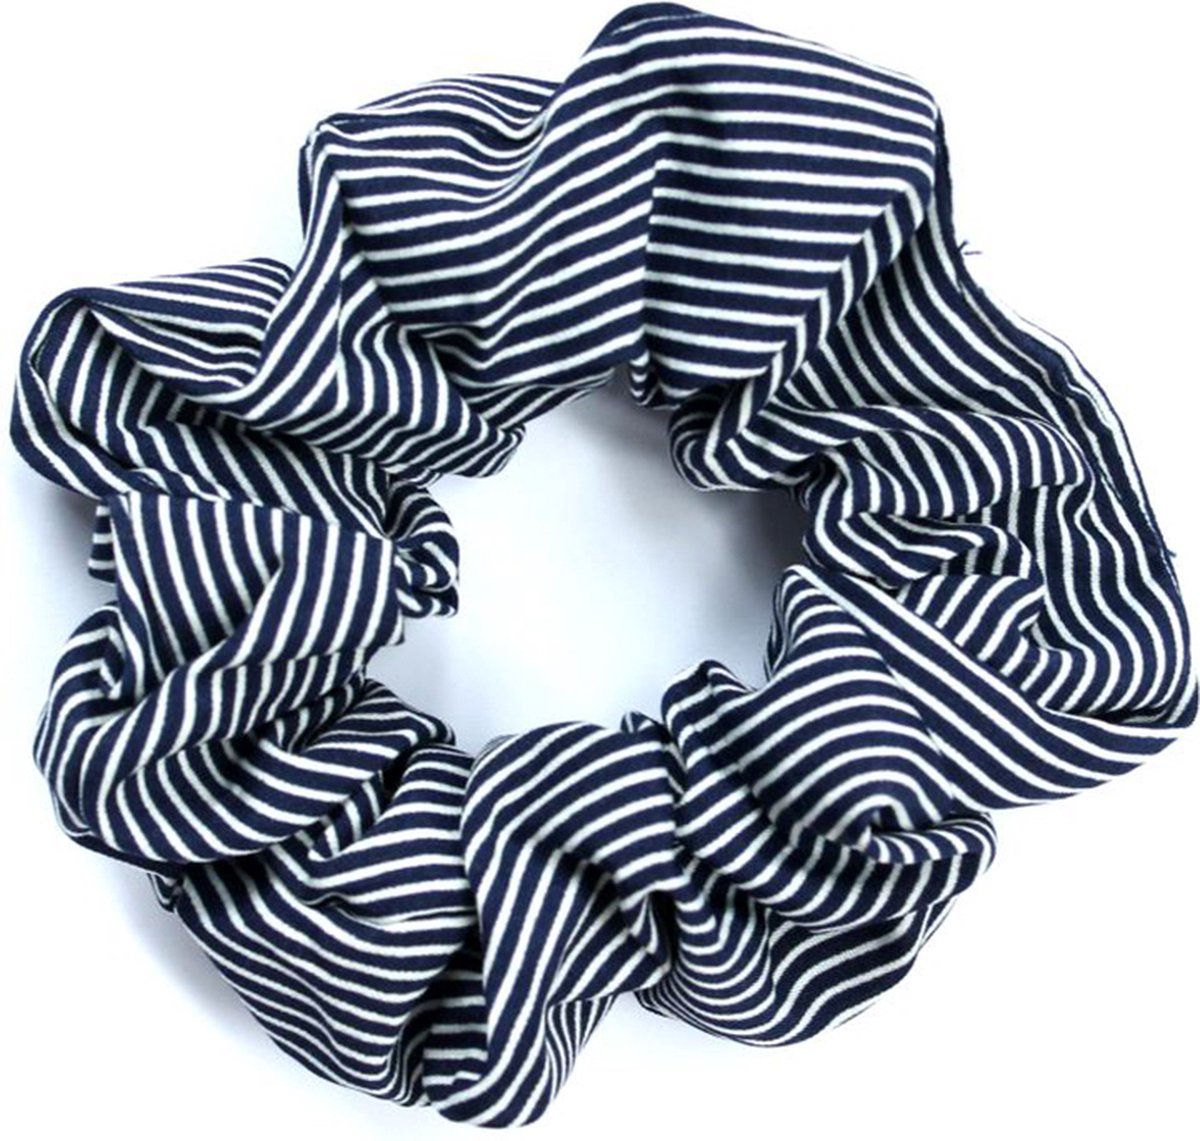 STUDIO Ivana - Scrunchie met strepen donkerblauw - Haarelastiek van textiel met streepjes - Donkerblauw met witte haarwokkel streep